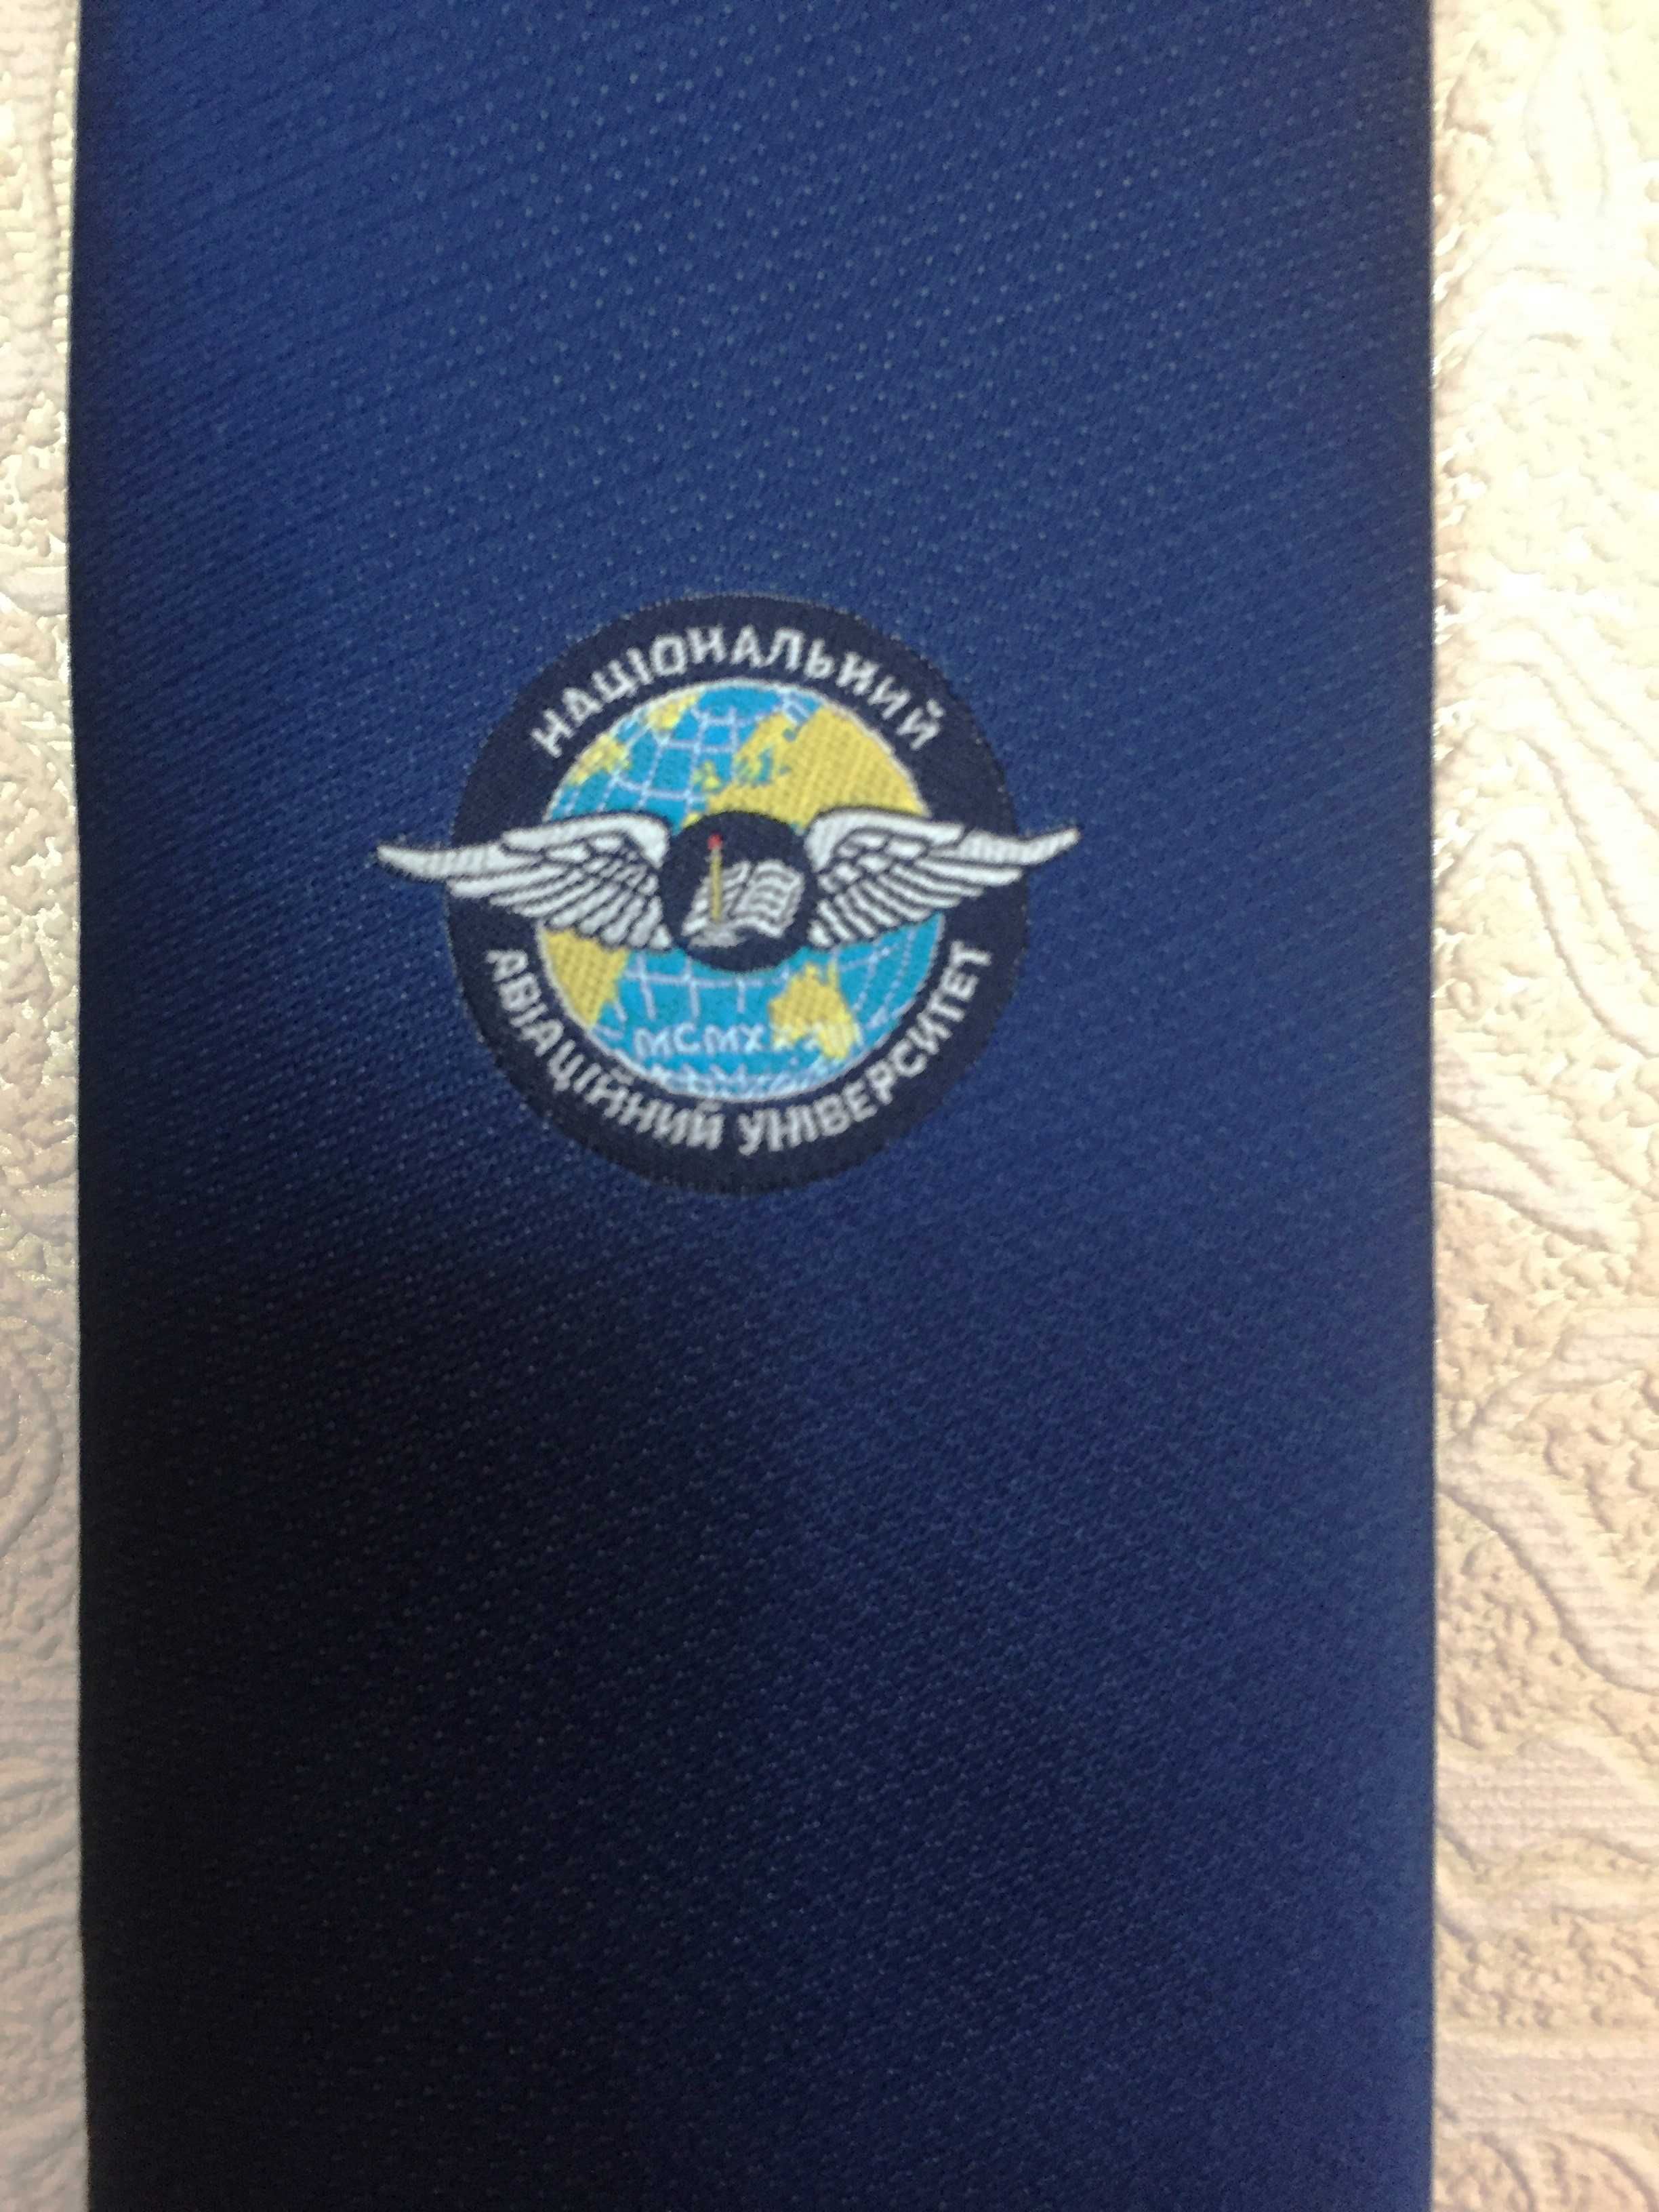 Авиаторам родом из НАУ: новый фирменный галстук альма-матер